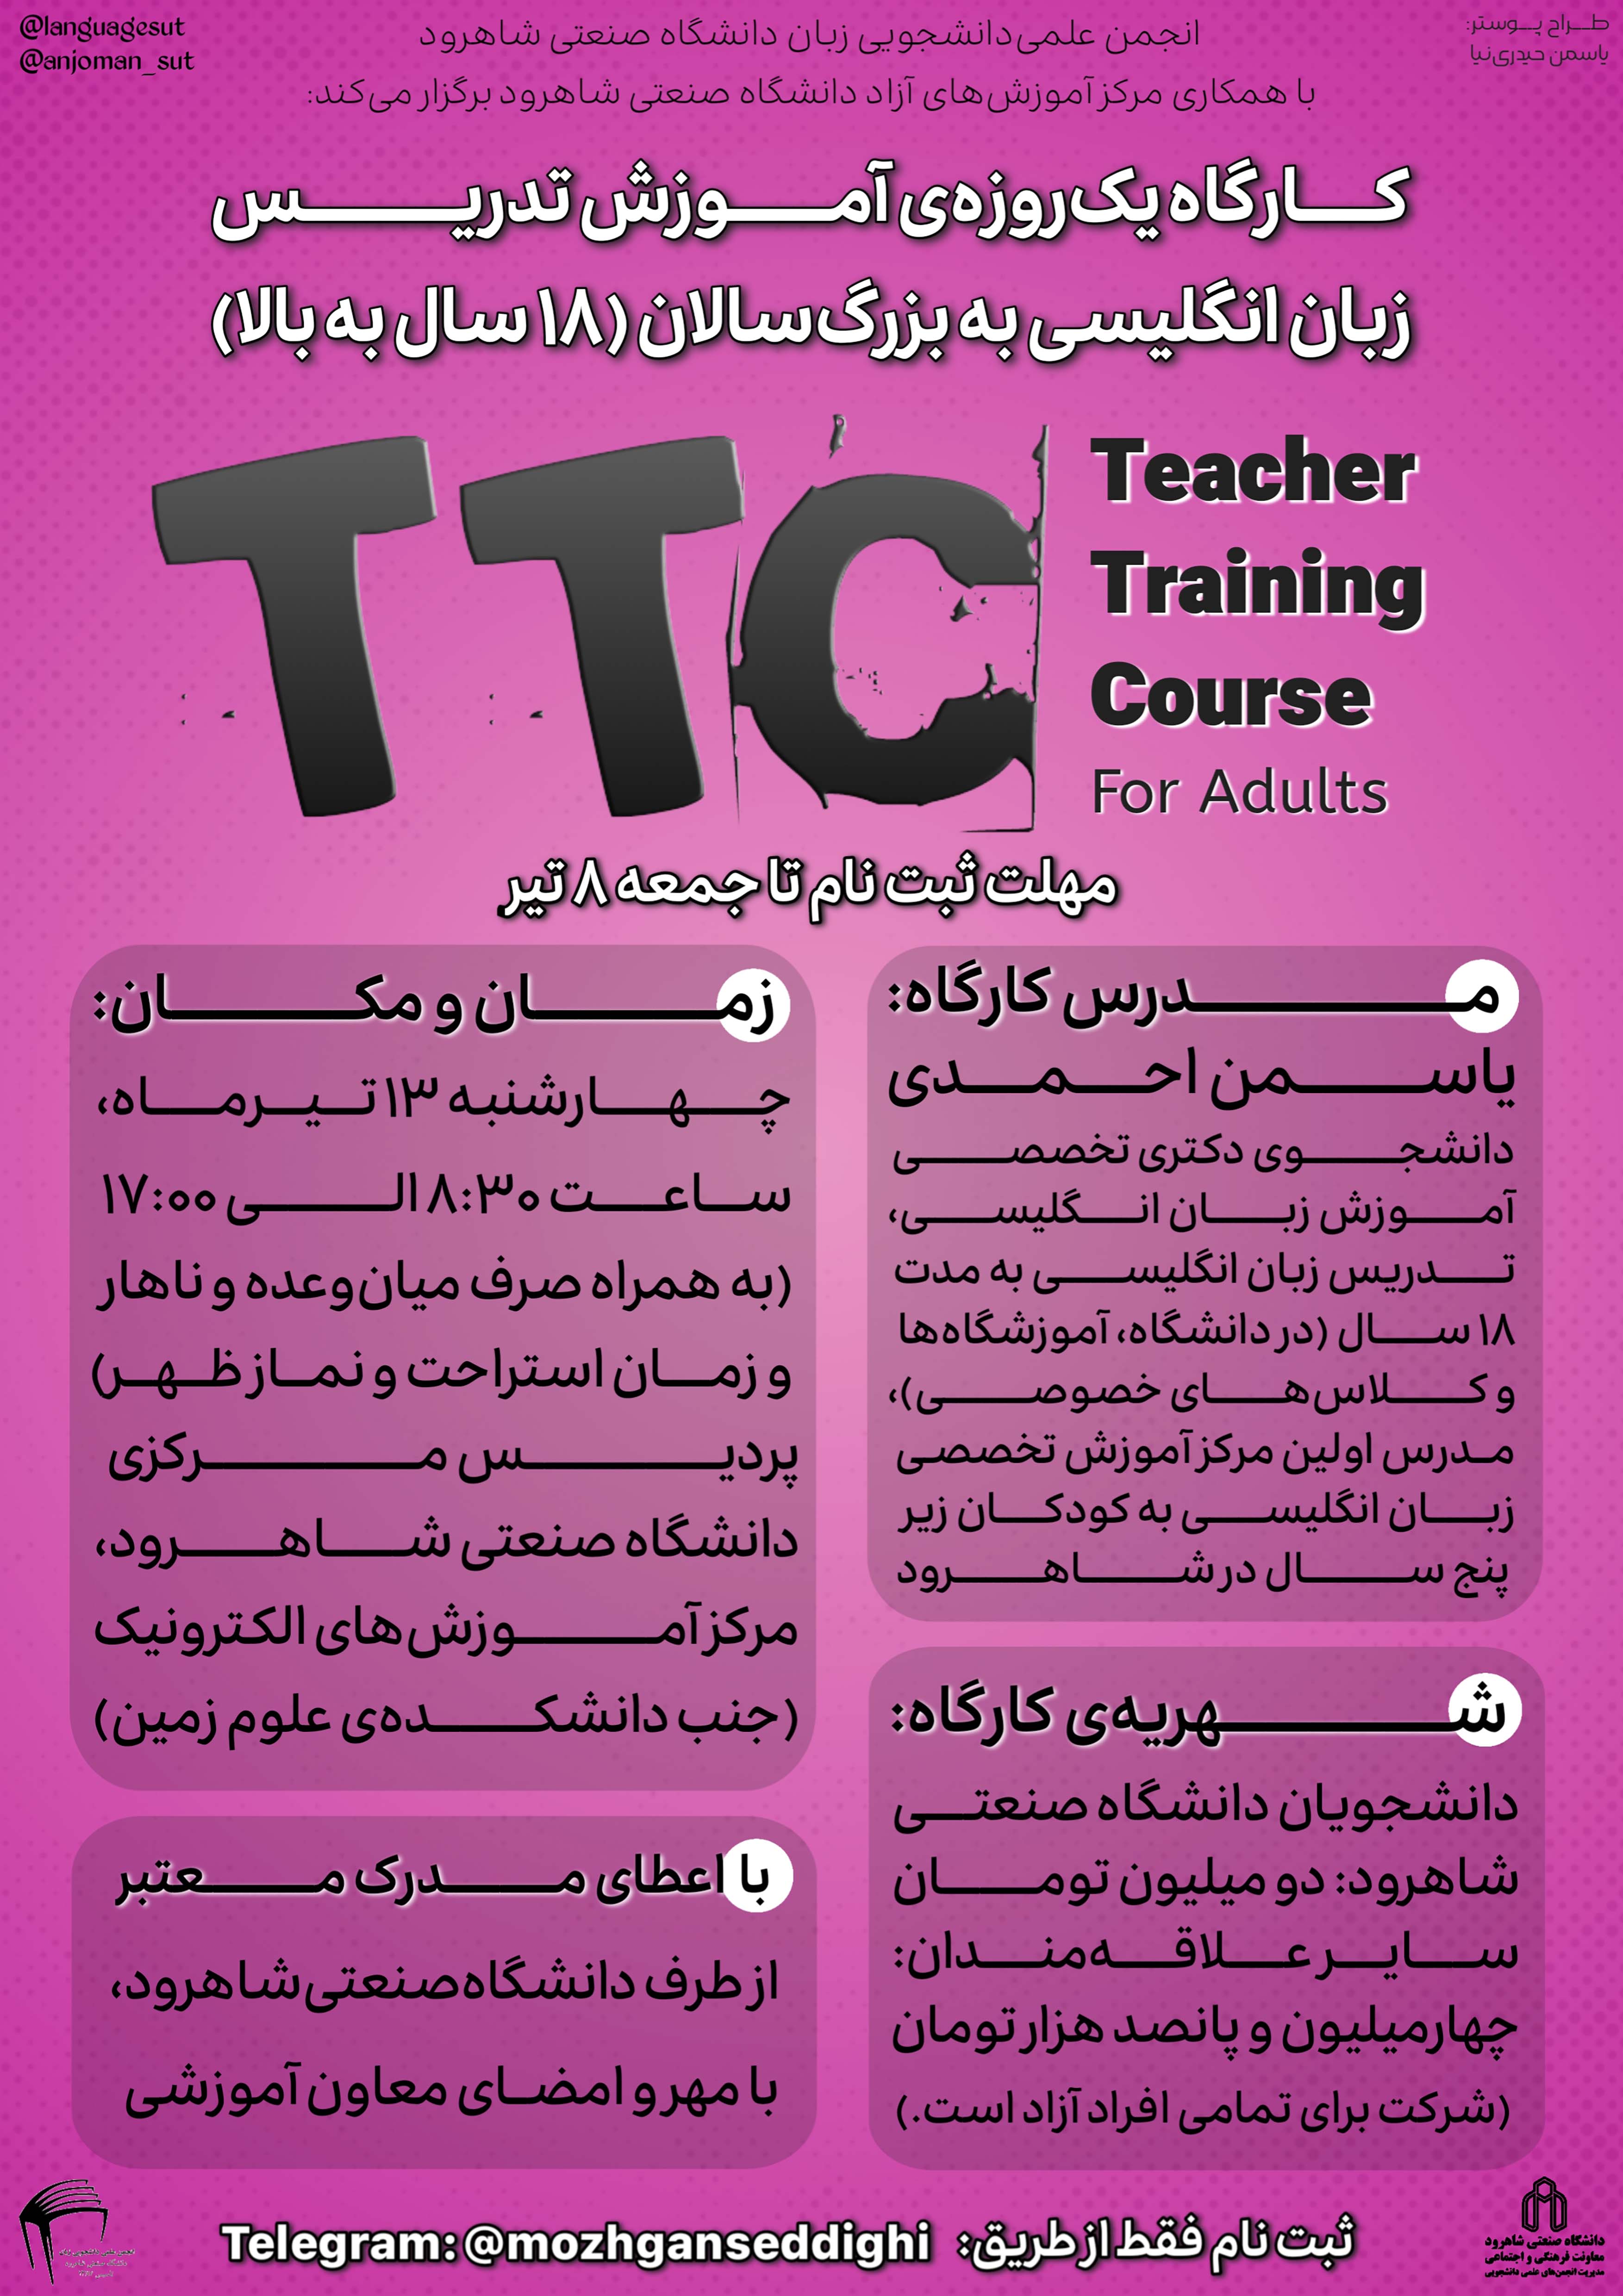 14030413 کارگاه آموزش تدریس زبان انگلیسی به بزرگسالان TTC